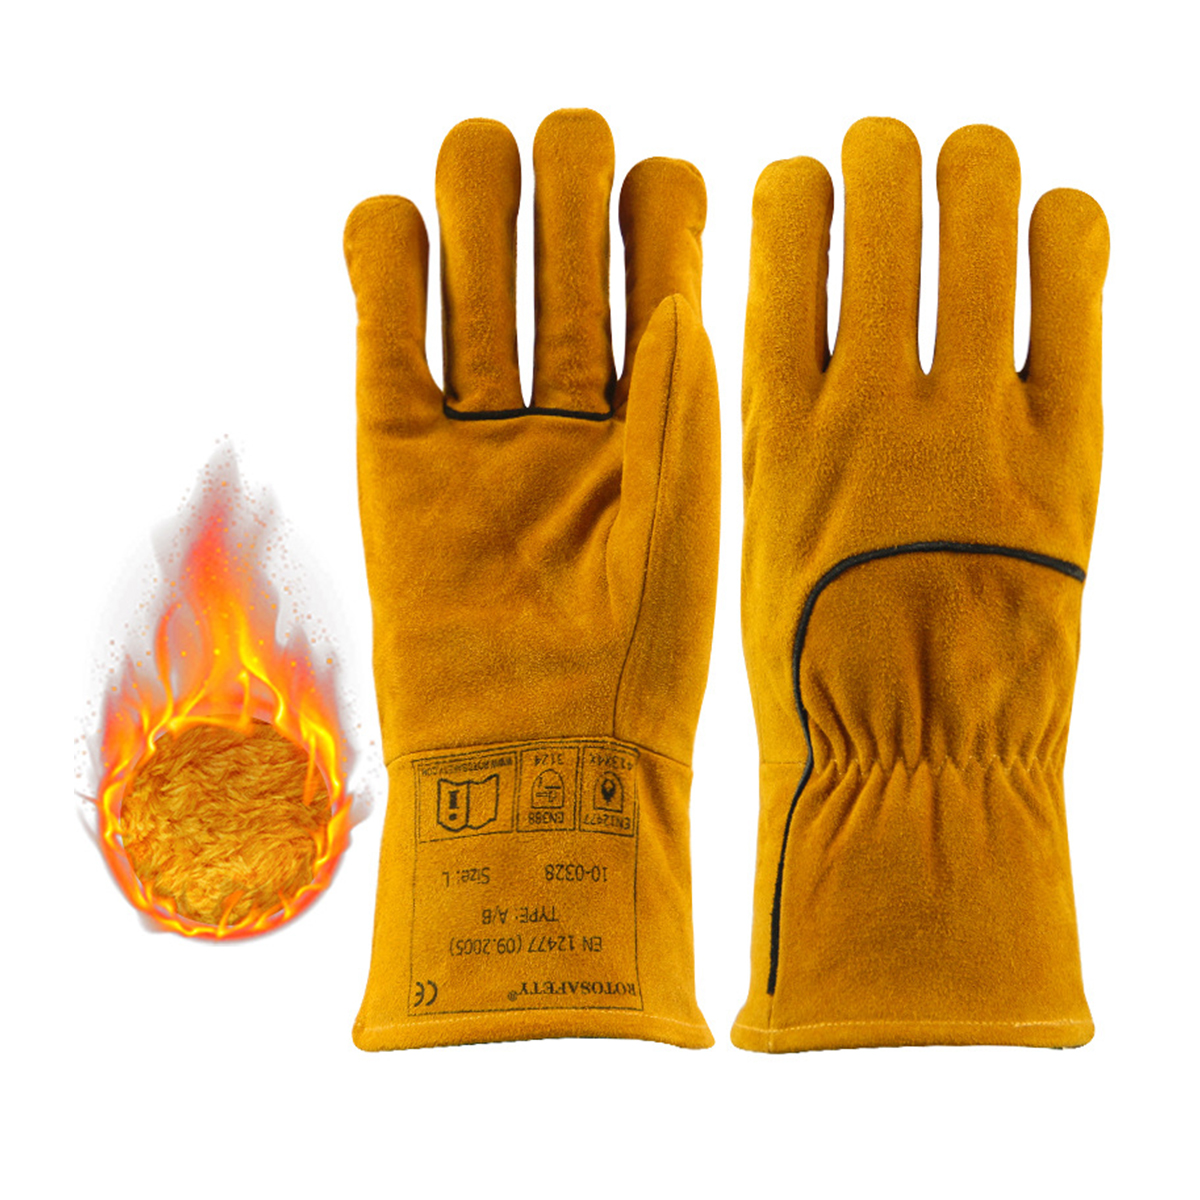 Luvas de soldadura Leather Forge Luvas de soldadura resistentes á calor para soldador Mig, Tig, churrasco, forno